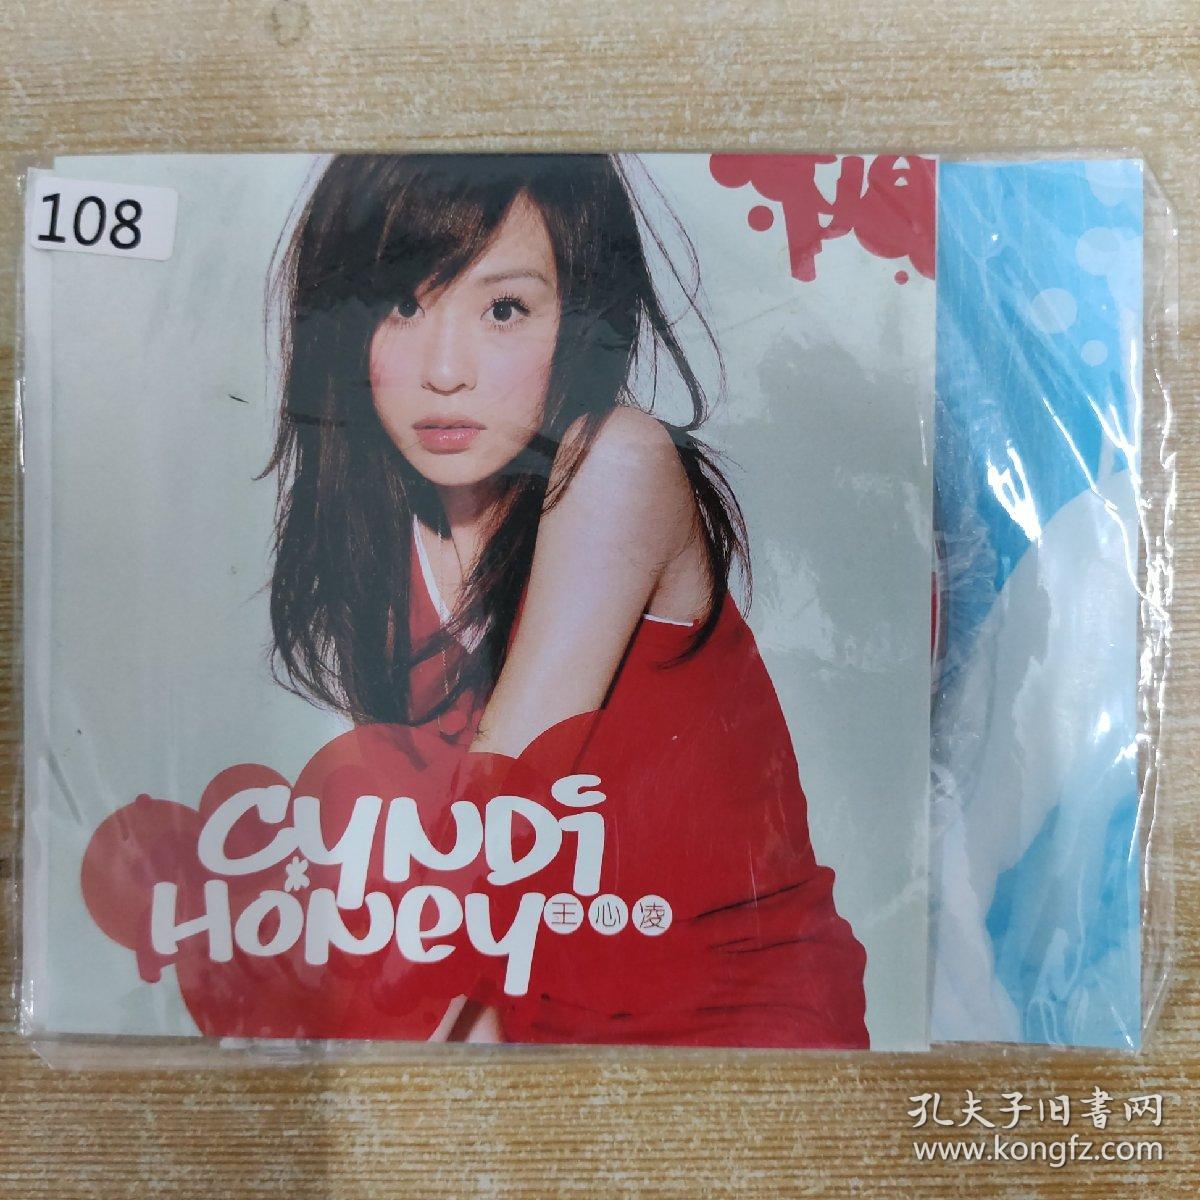 108唱片光盘 CD：cyndi honey 王心凌  一张碟片简装